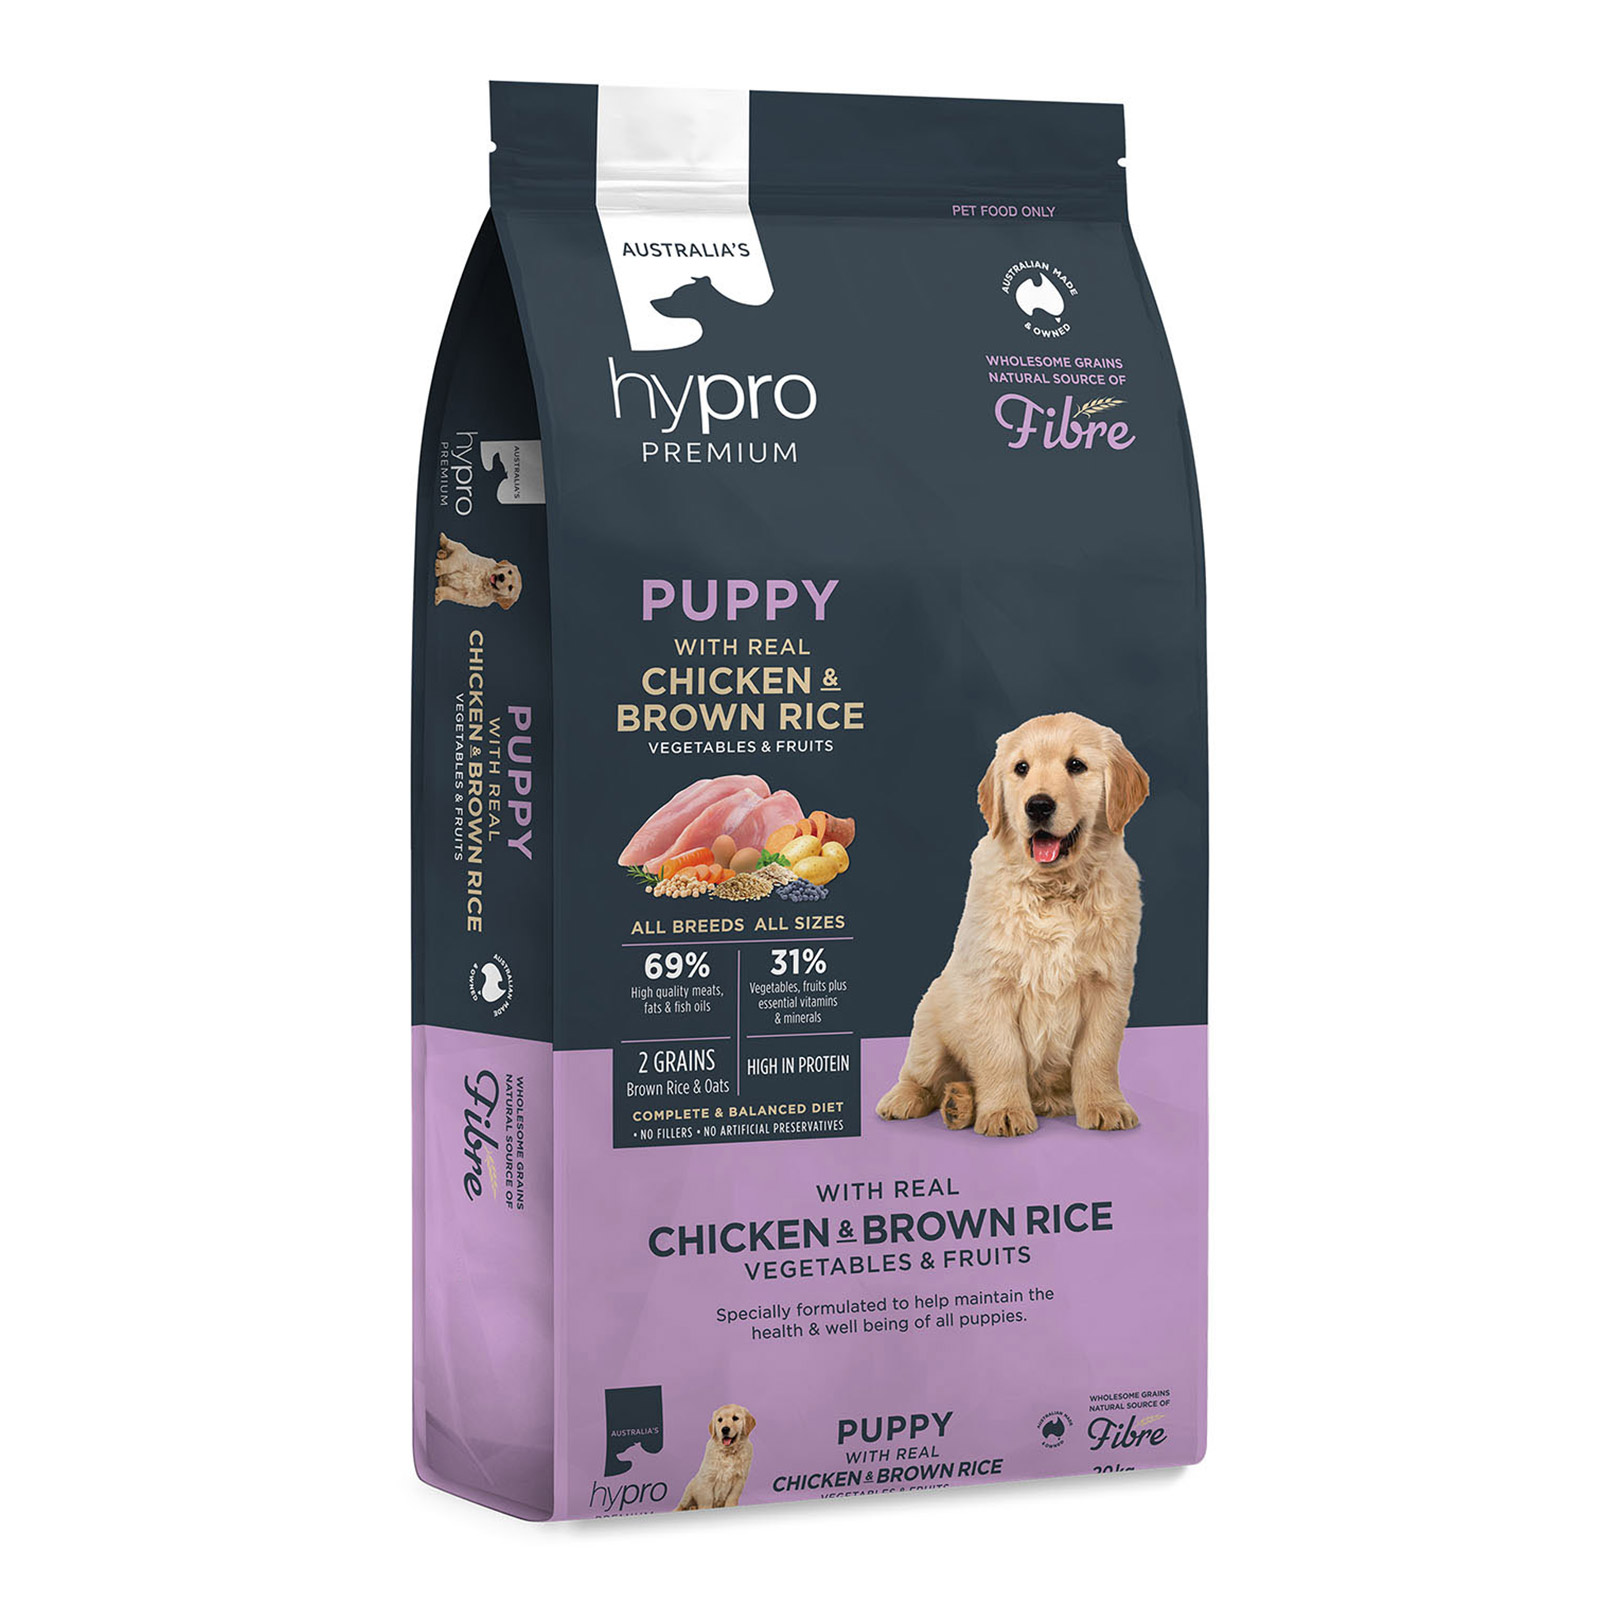 Buy Hypro Premium Wholesome Grains Puppy Food (Chicken & Brown Rice)  2.5 kg Online